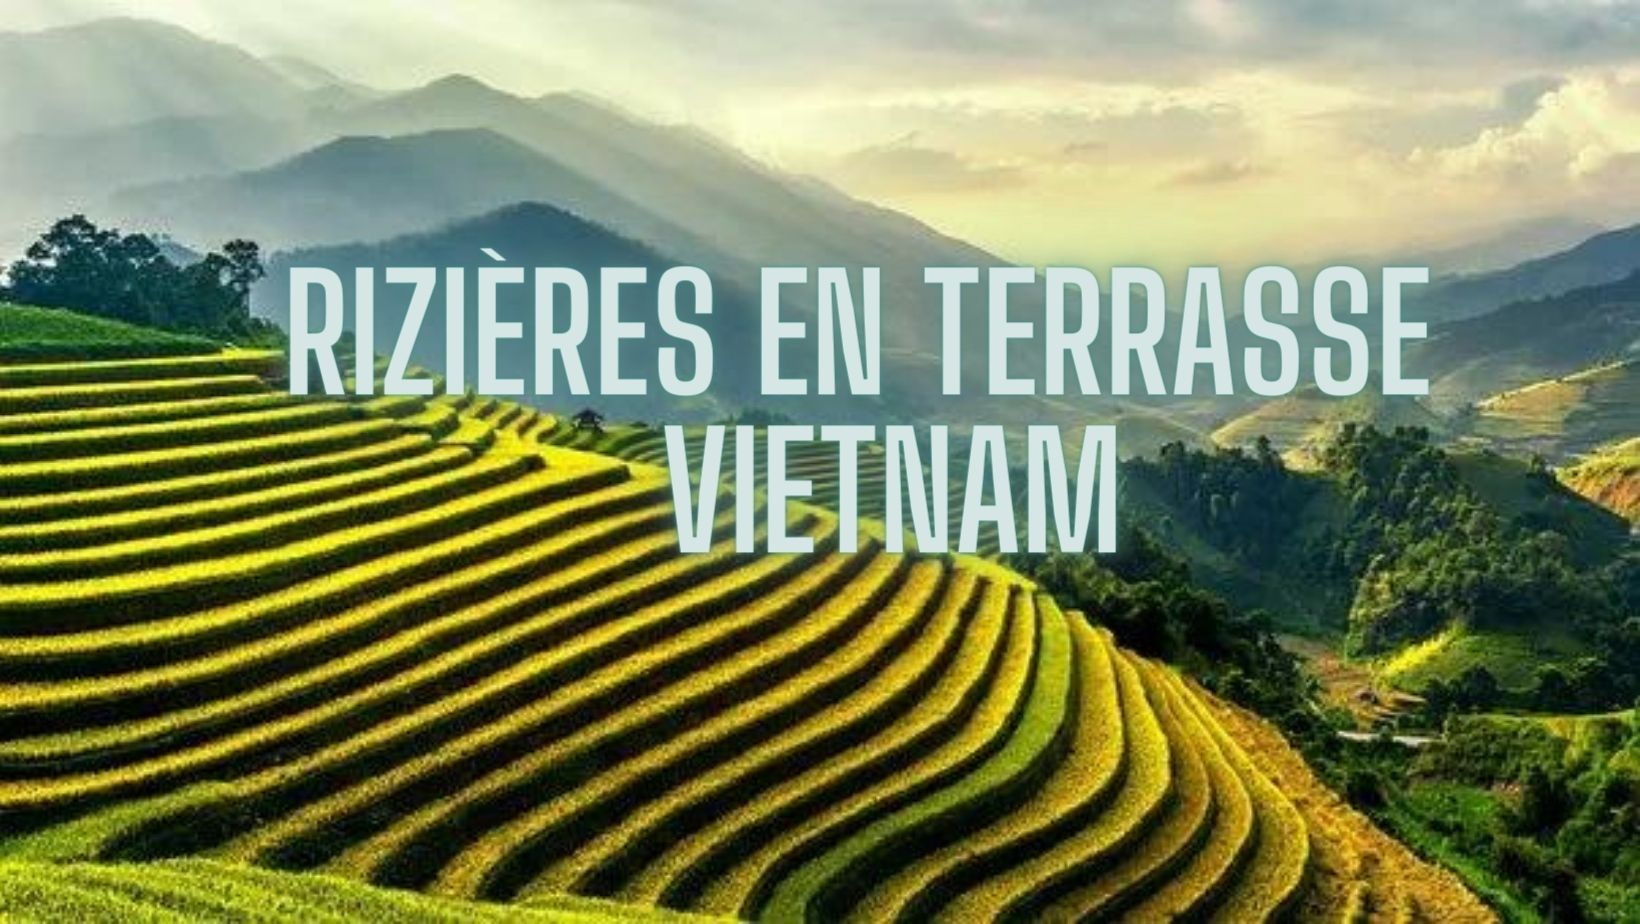 Ou se trouvent les plus belles rizières en terrasse du Vietnam